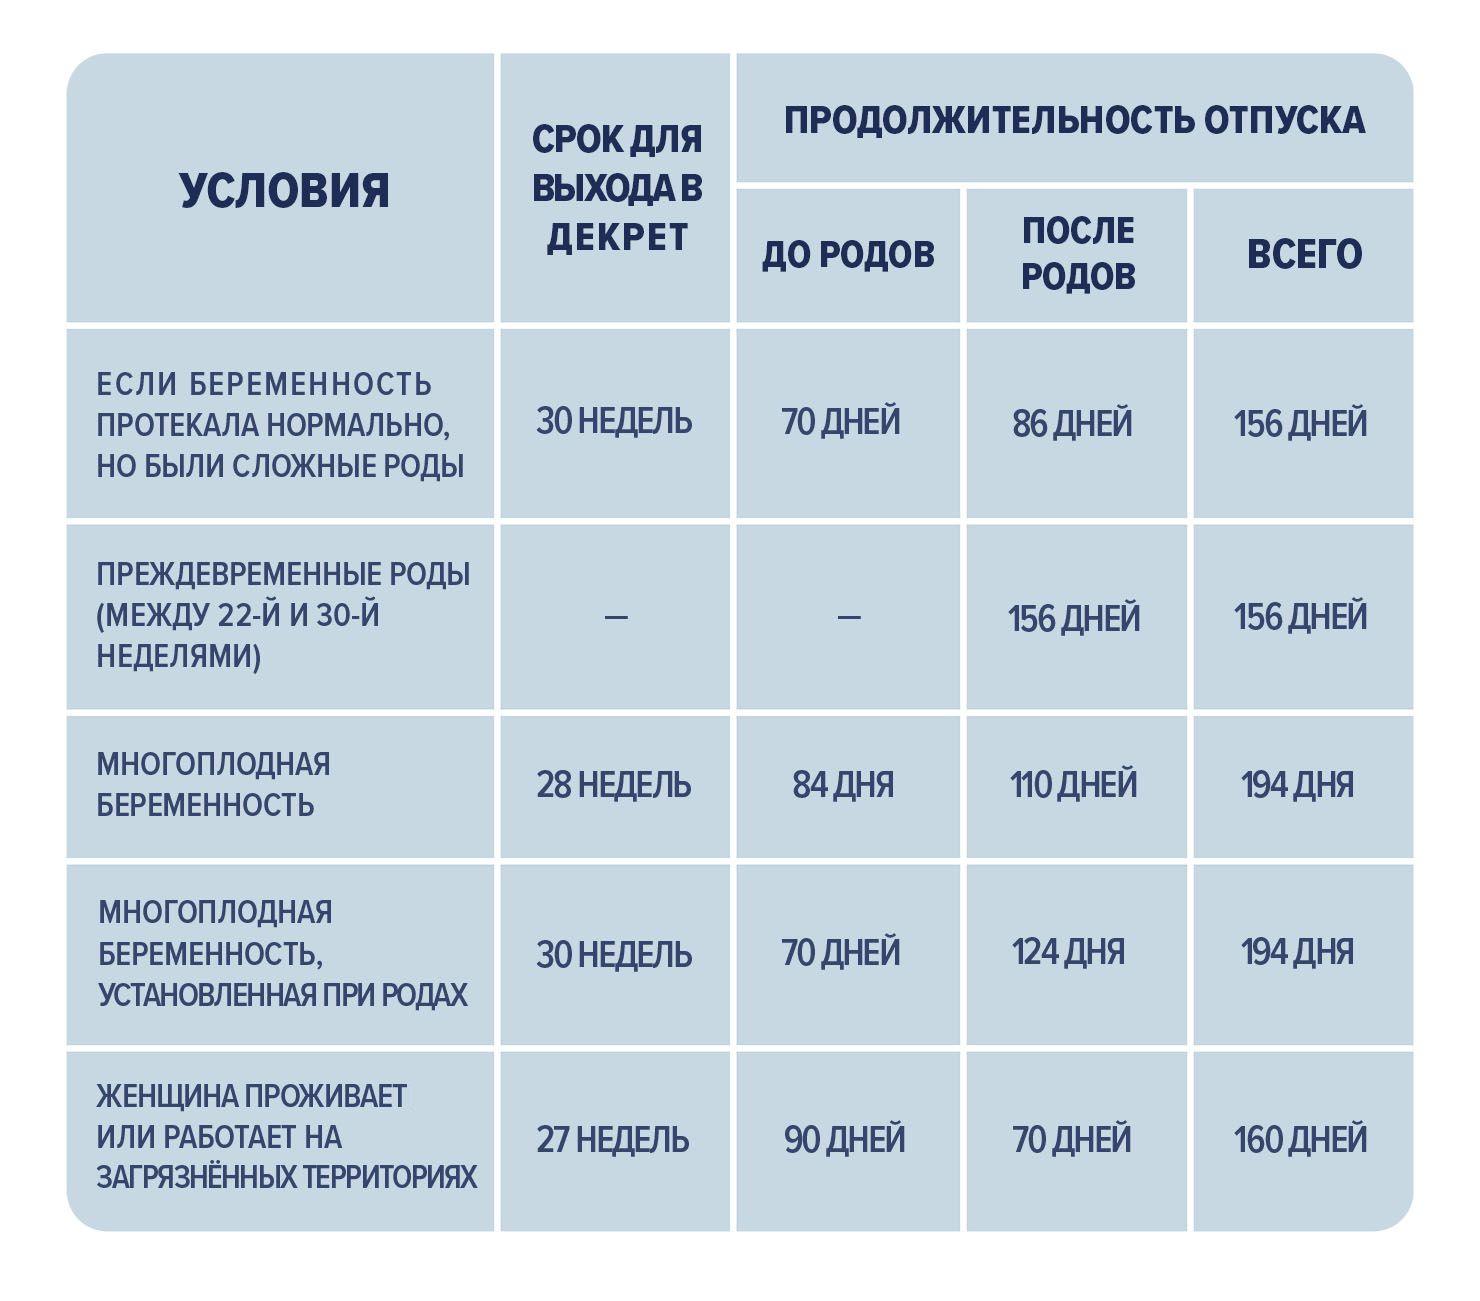 Кто оплачивает декретный отпуск в 2019 году - работодатель или государство, фирма, в России сопровождается ежемесячным